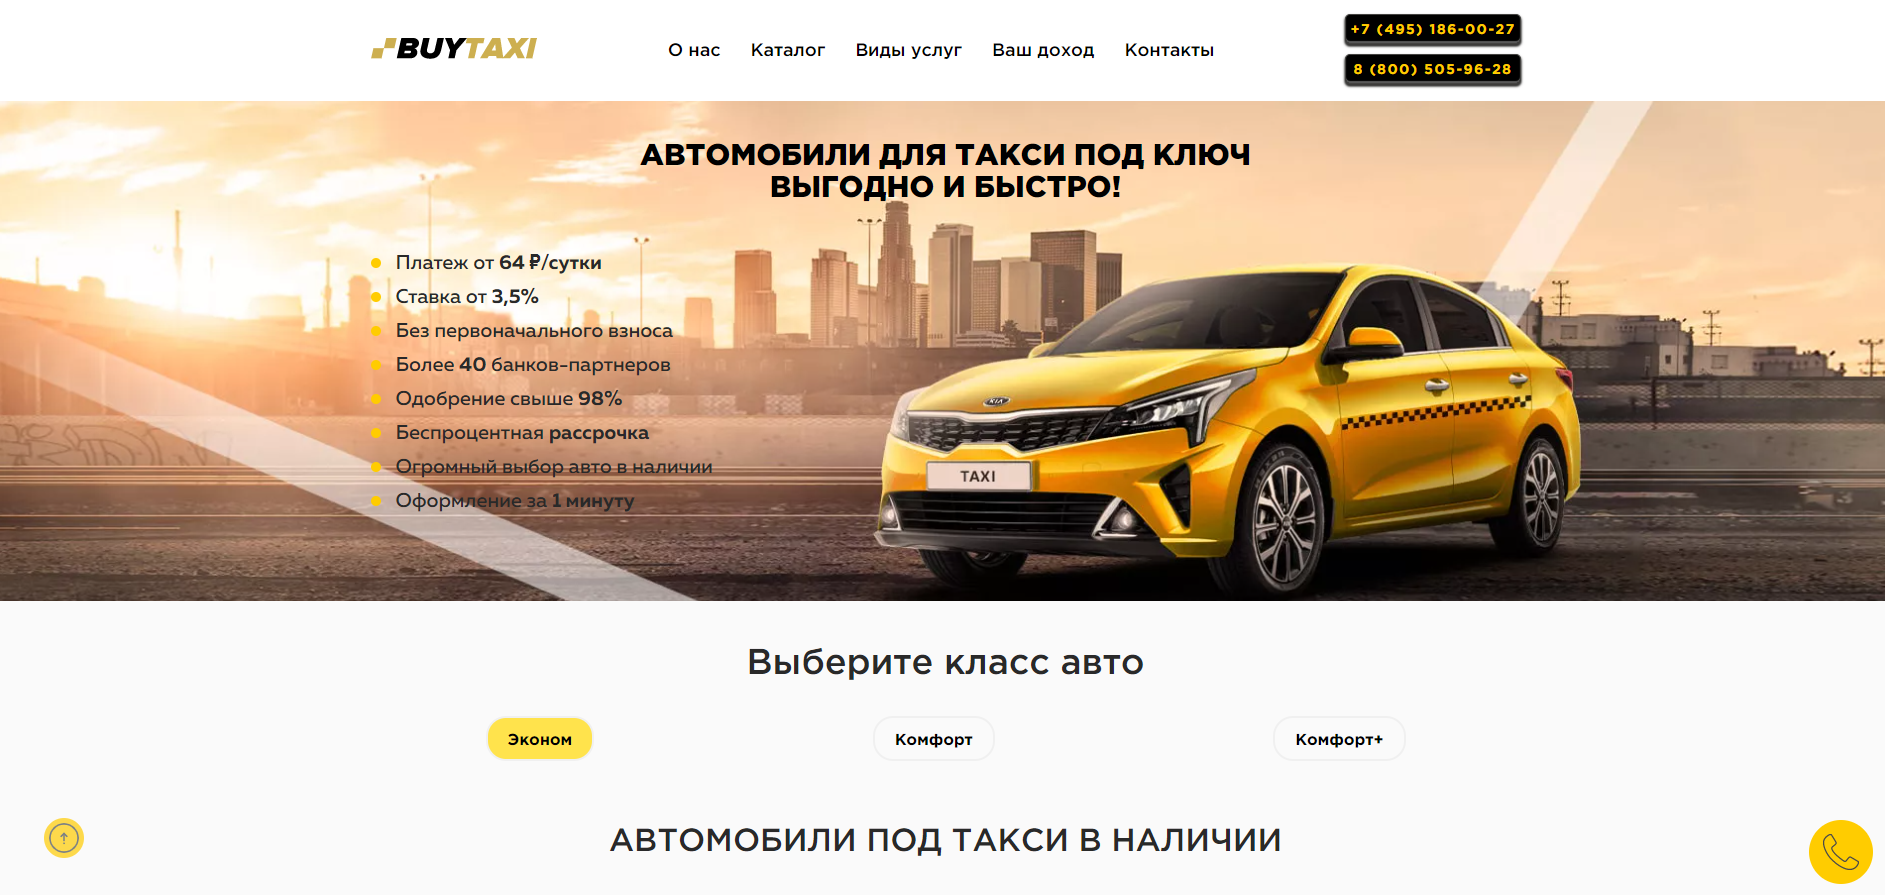 Официальный сайт Kupi Taxi